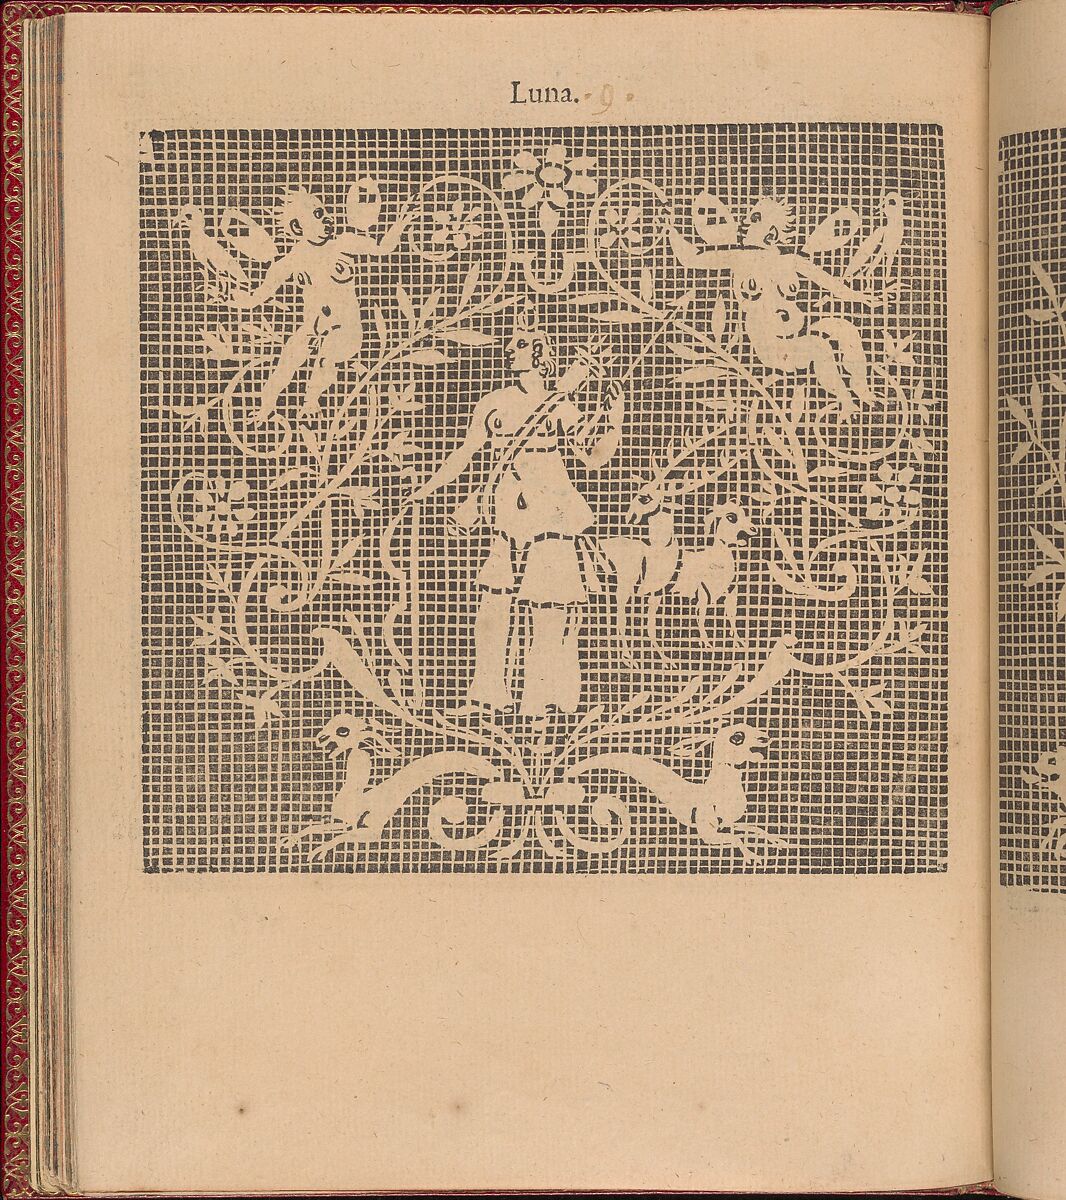 Les Singuliers et Nouveaux Portraicts... page 45 (verso), Federico de Vinciolo (Italian, active Paris, ca. 1587–99), Woodcut 